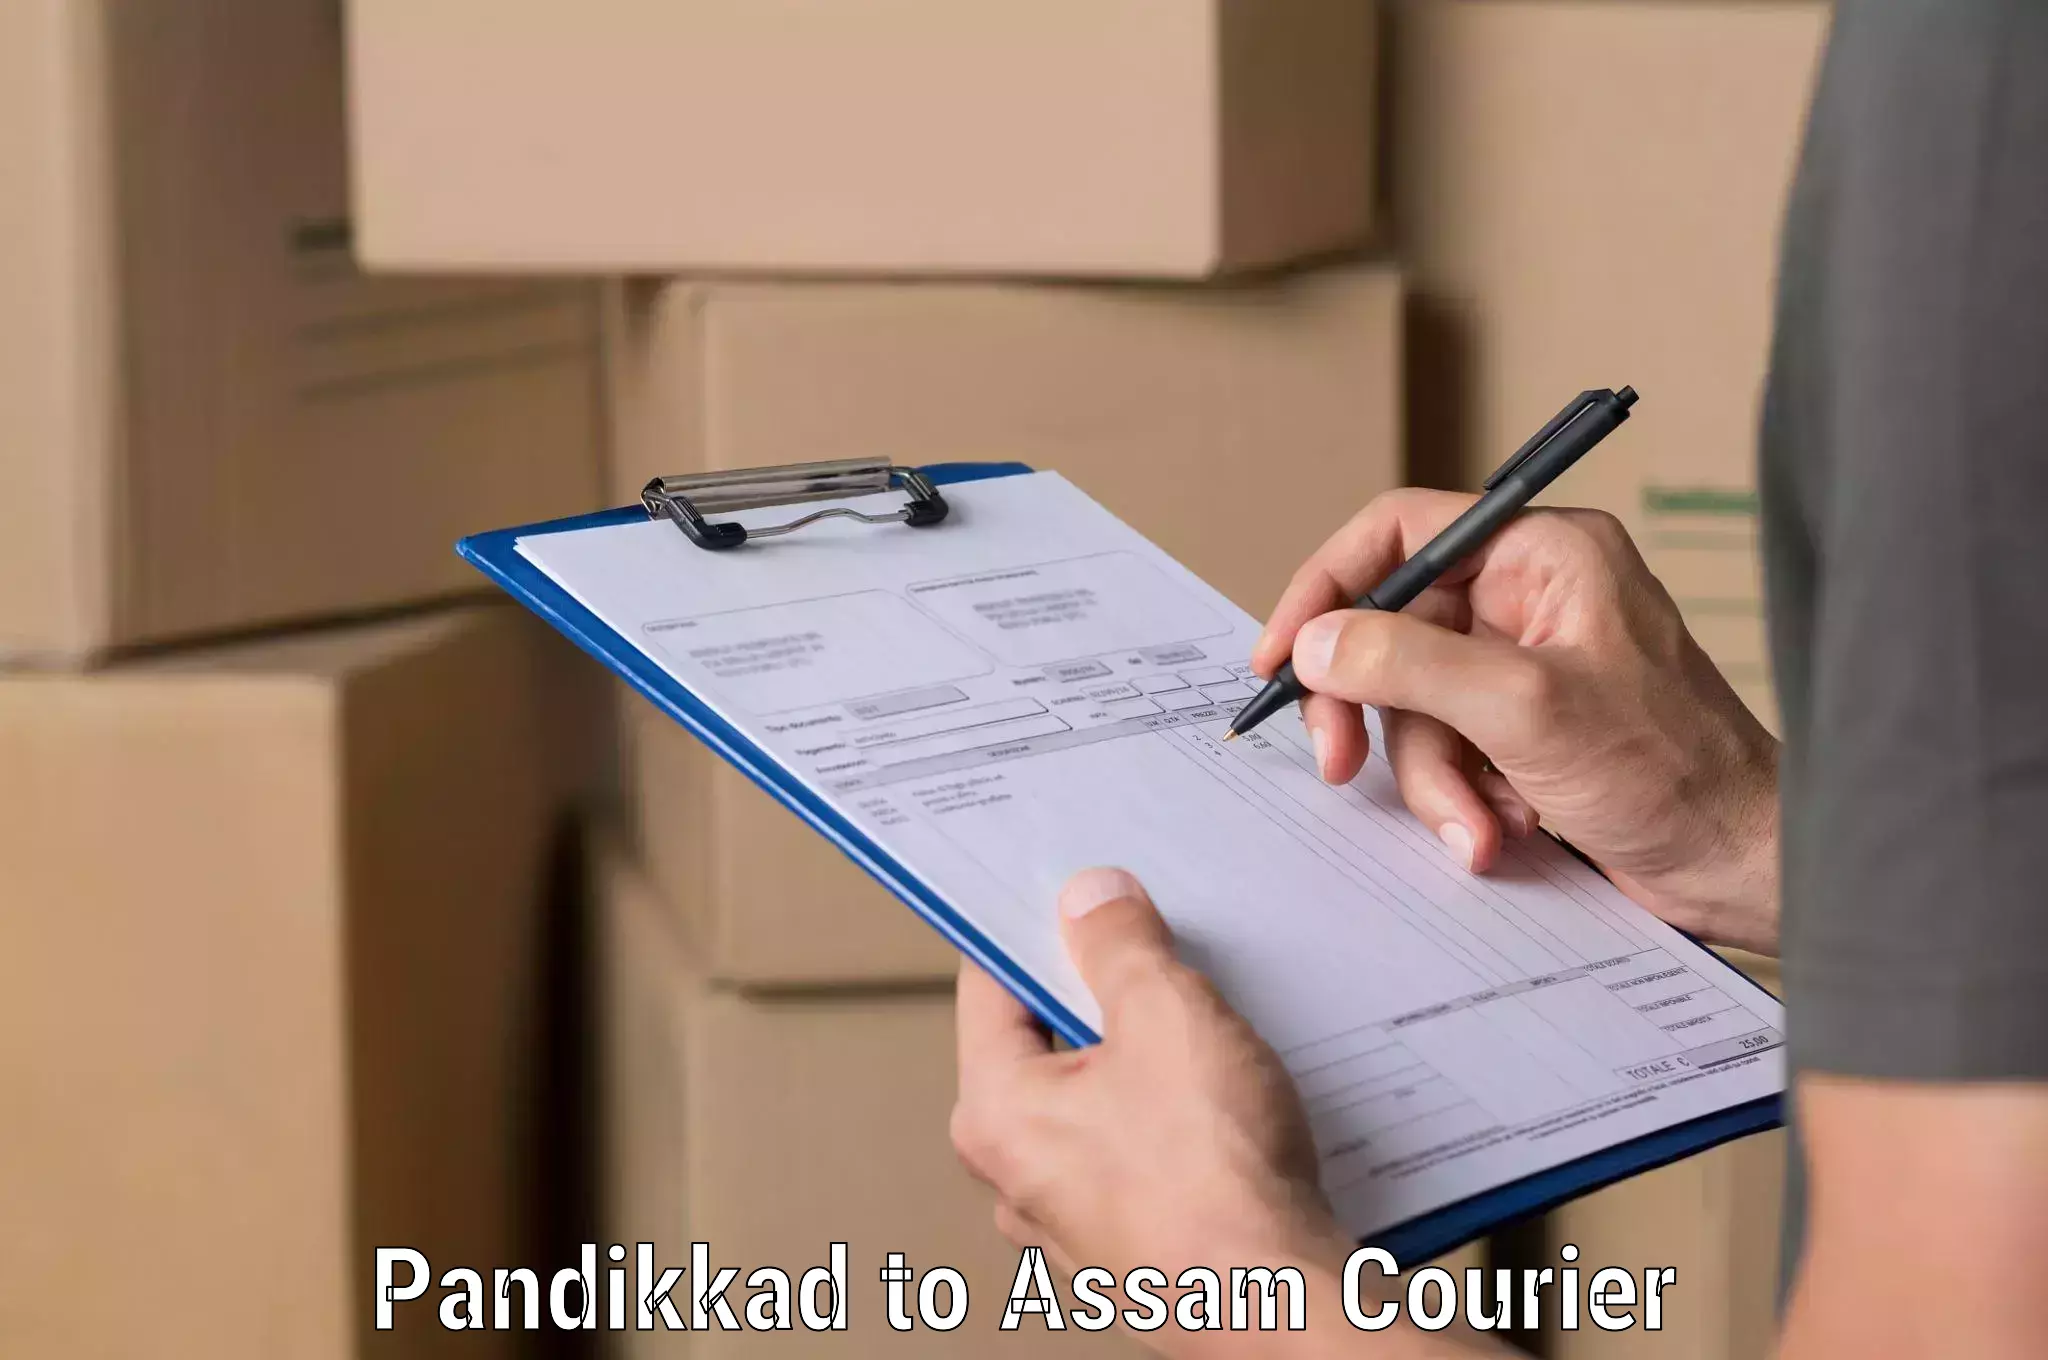 Business shipping needs Pandikkad to Chhaygaon